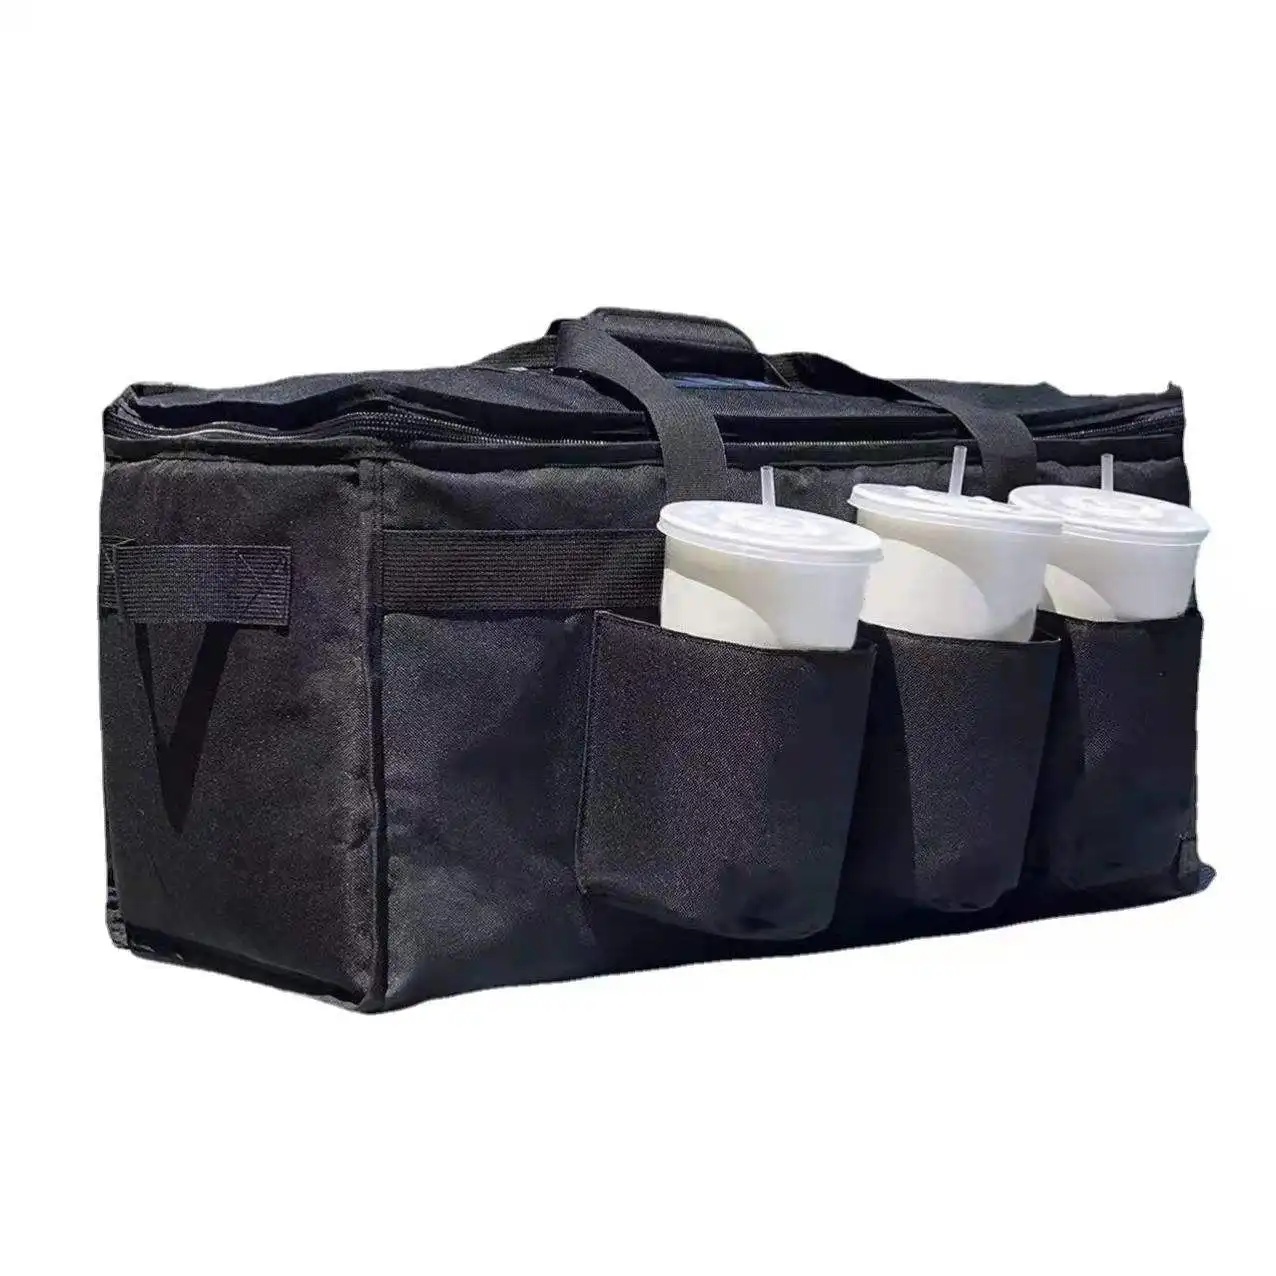 カップホルダー付き断熱フードデリバリーバッグドリンクキャリアプレミアムXXL商用品質のホットおよびコールドフードデリバリーバッグ